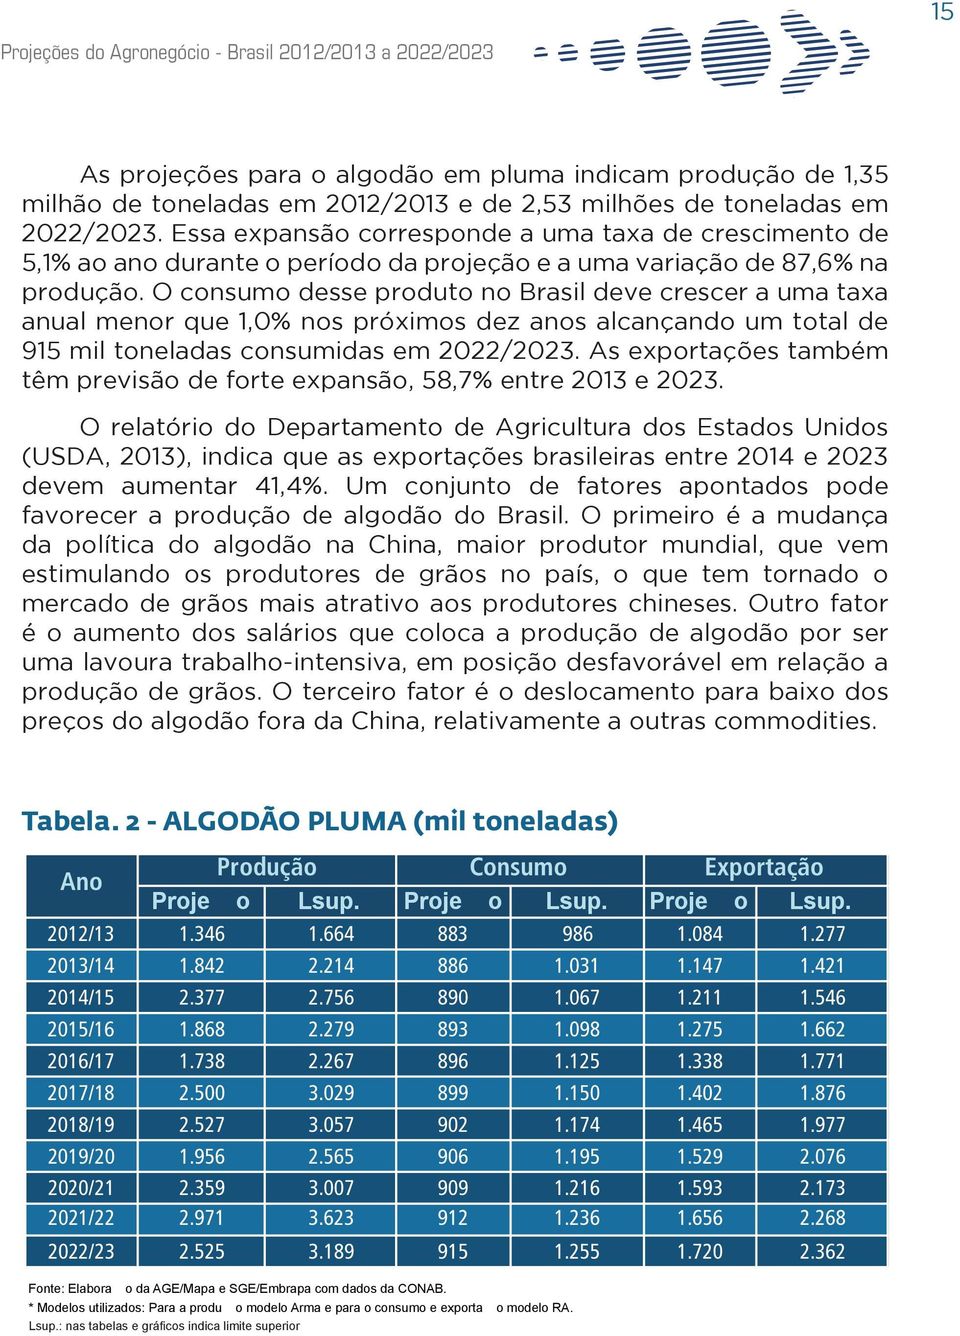 O consumo desse produto no Brasil deve crescer a uma taxa anual menor que 1,0% nos próximos dez anos alcançando um total de 915 mil toneladas consumidas em 2022/2023.